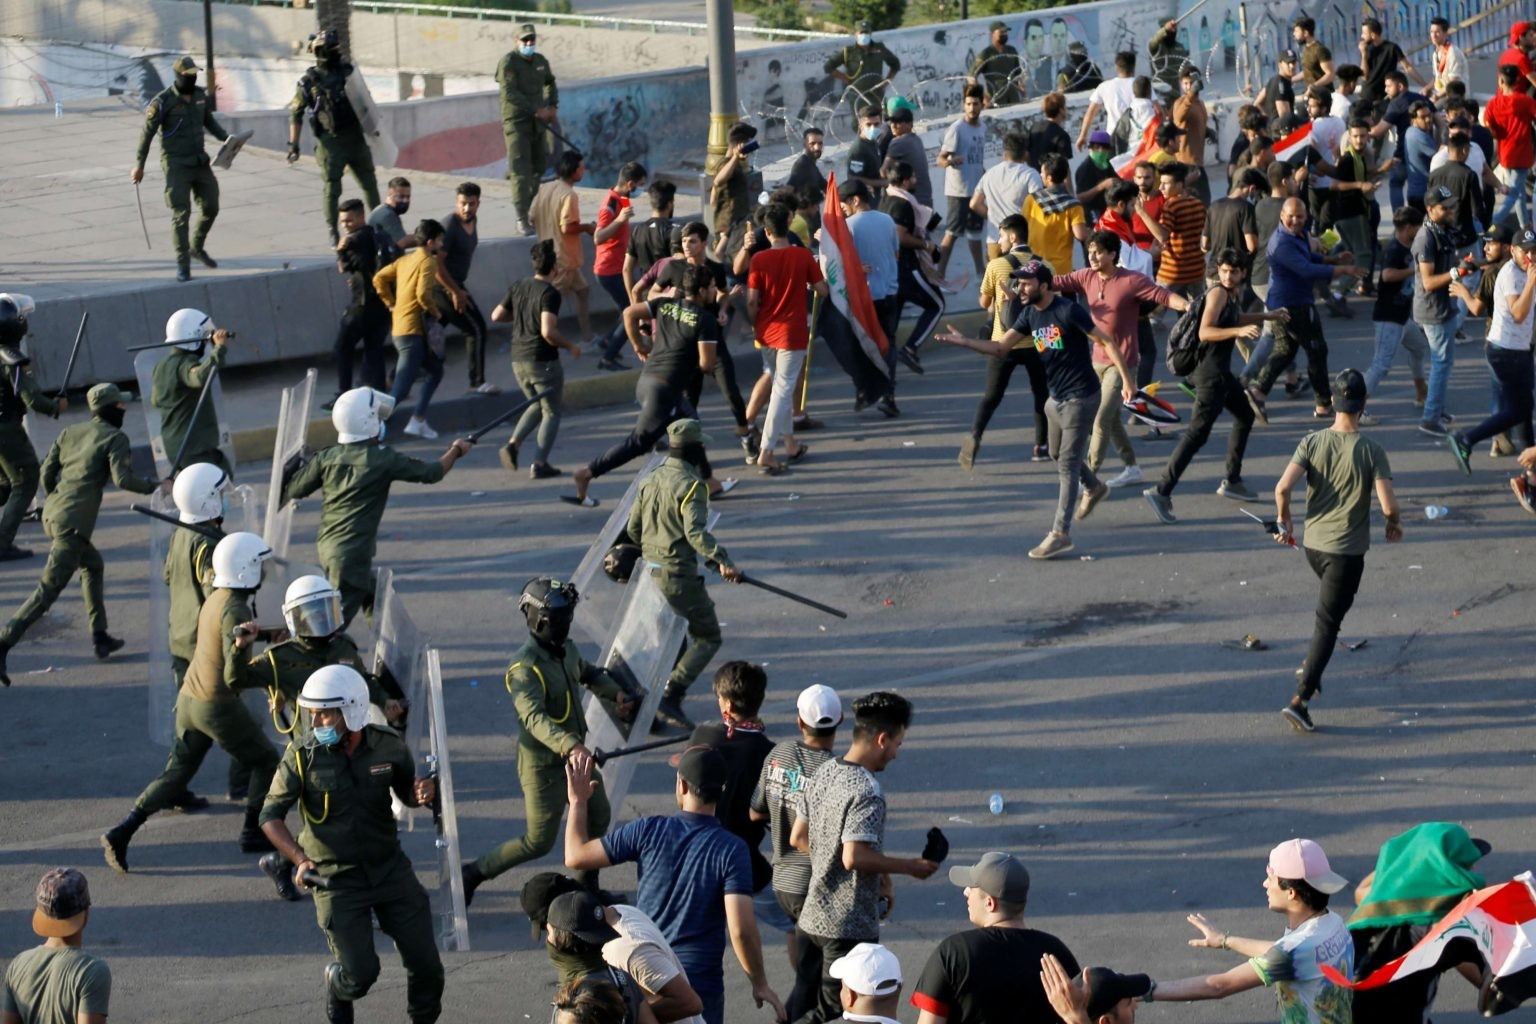 مفوضية حقوق الإنسان العراقية أفادت بمقتل متظاهر وإصابة آخرين برصاص قوات الأمن بساحة التحرير